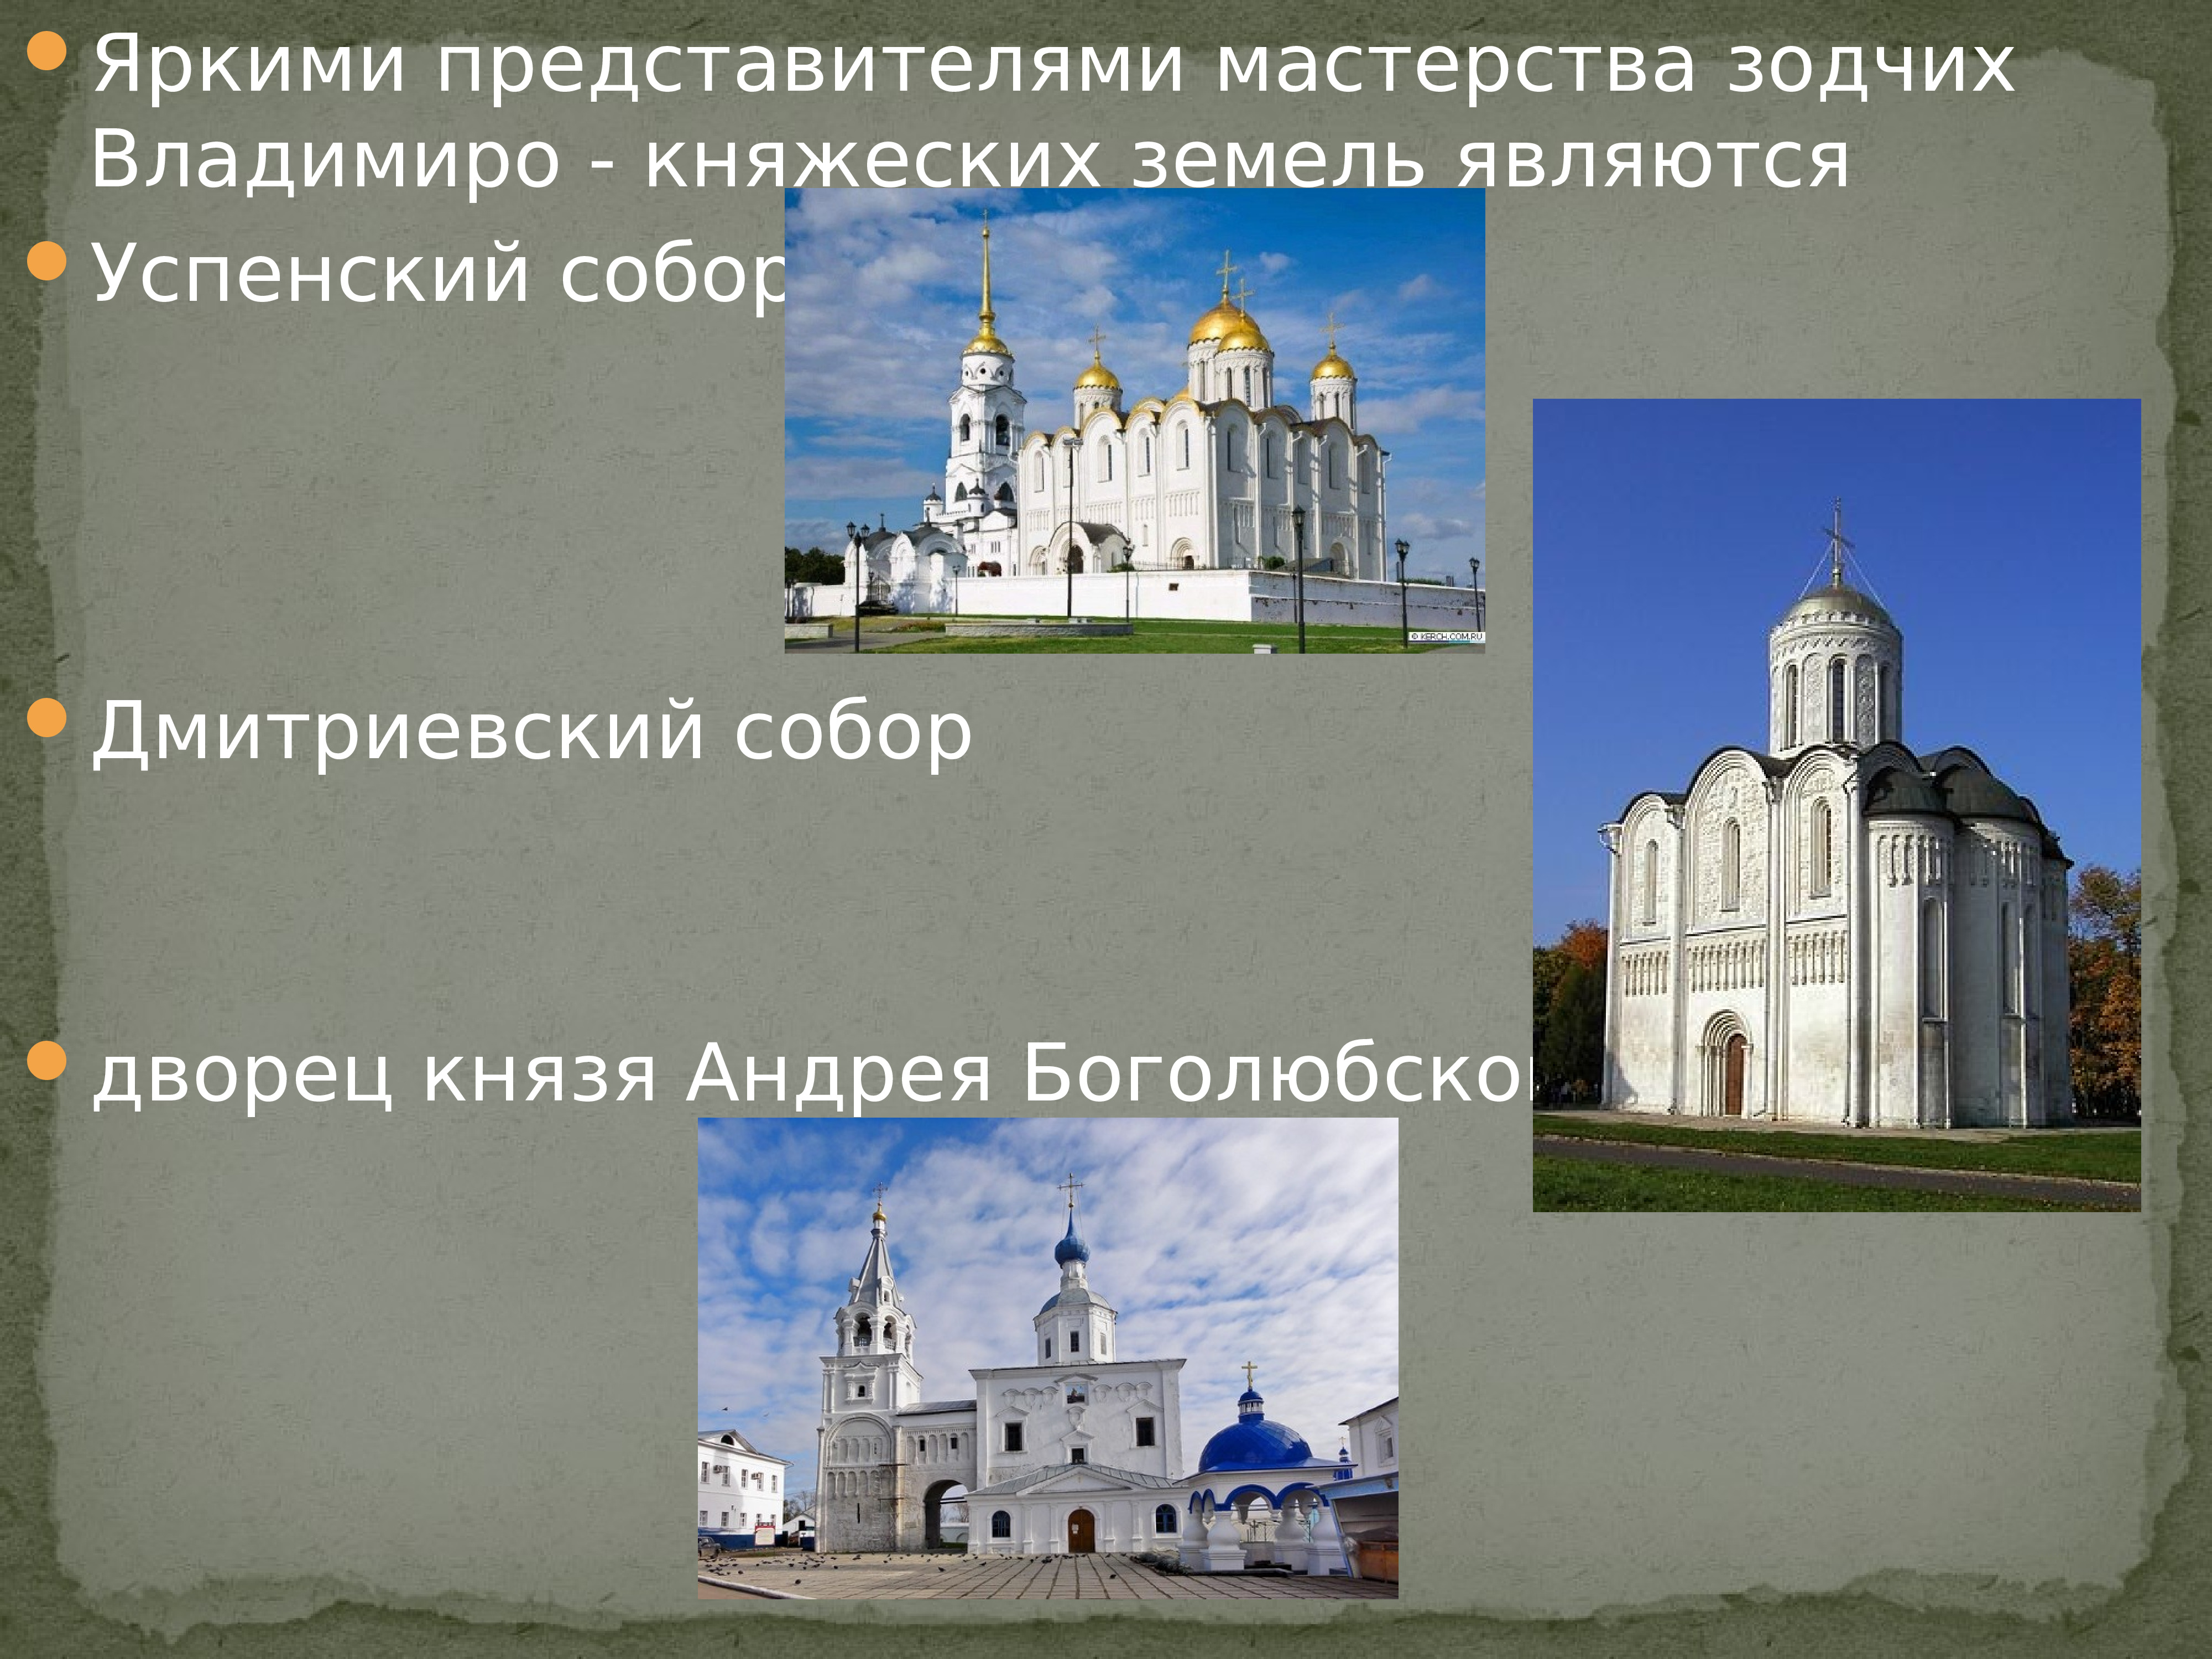 Боголюбово дворец Андрея Боголюбского реконструкция